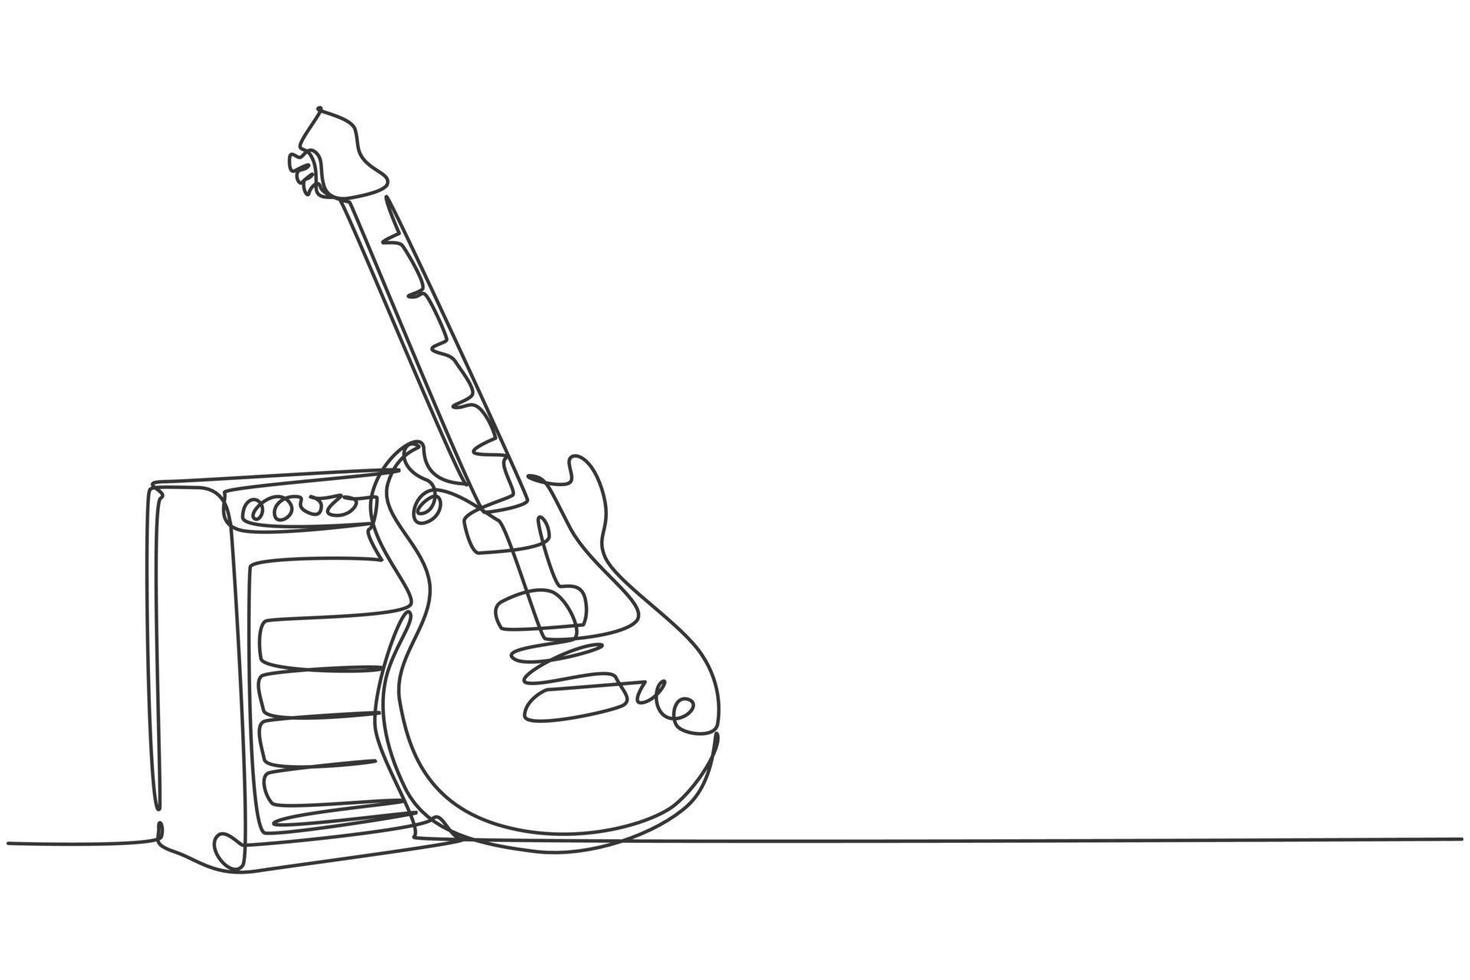 een enkele lijntekening van elektrische gitaar met versterker. snaarmuziek instrumenten concept. trendy doorlopende lijn tekenen grafisch ontwerp vectorillustratie vector